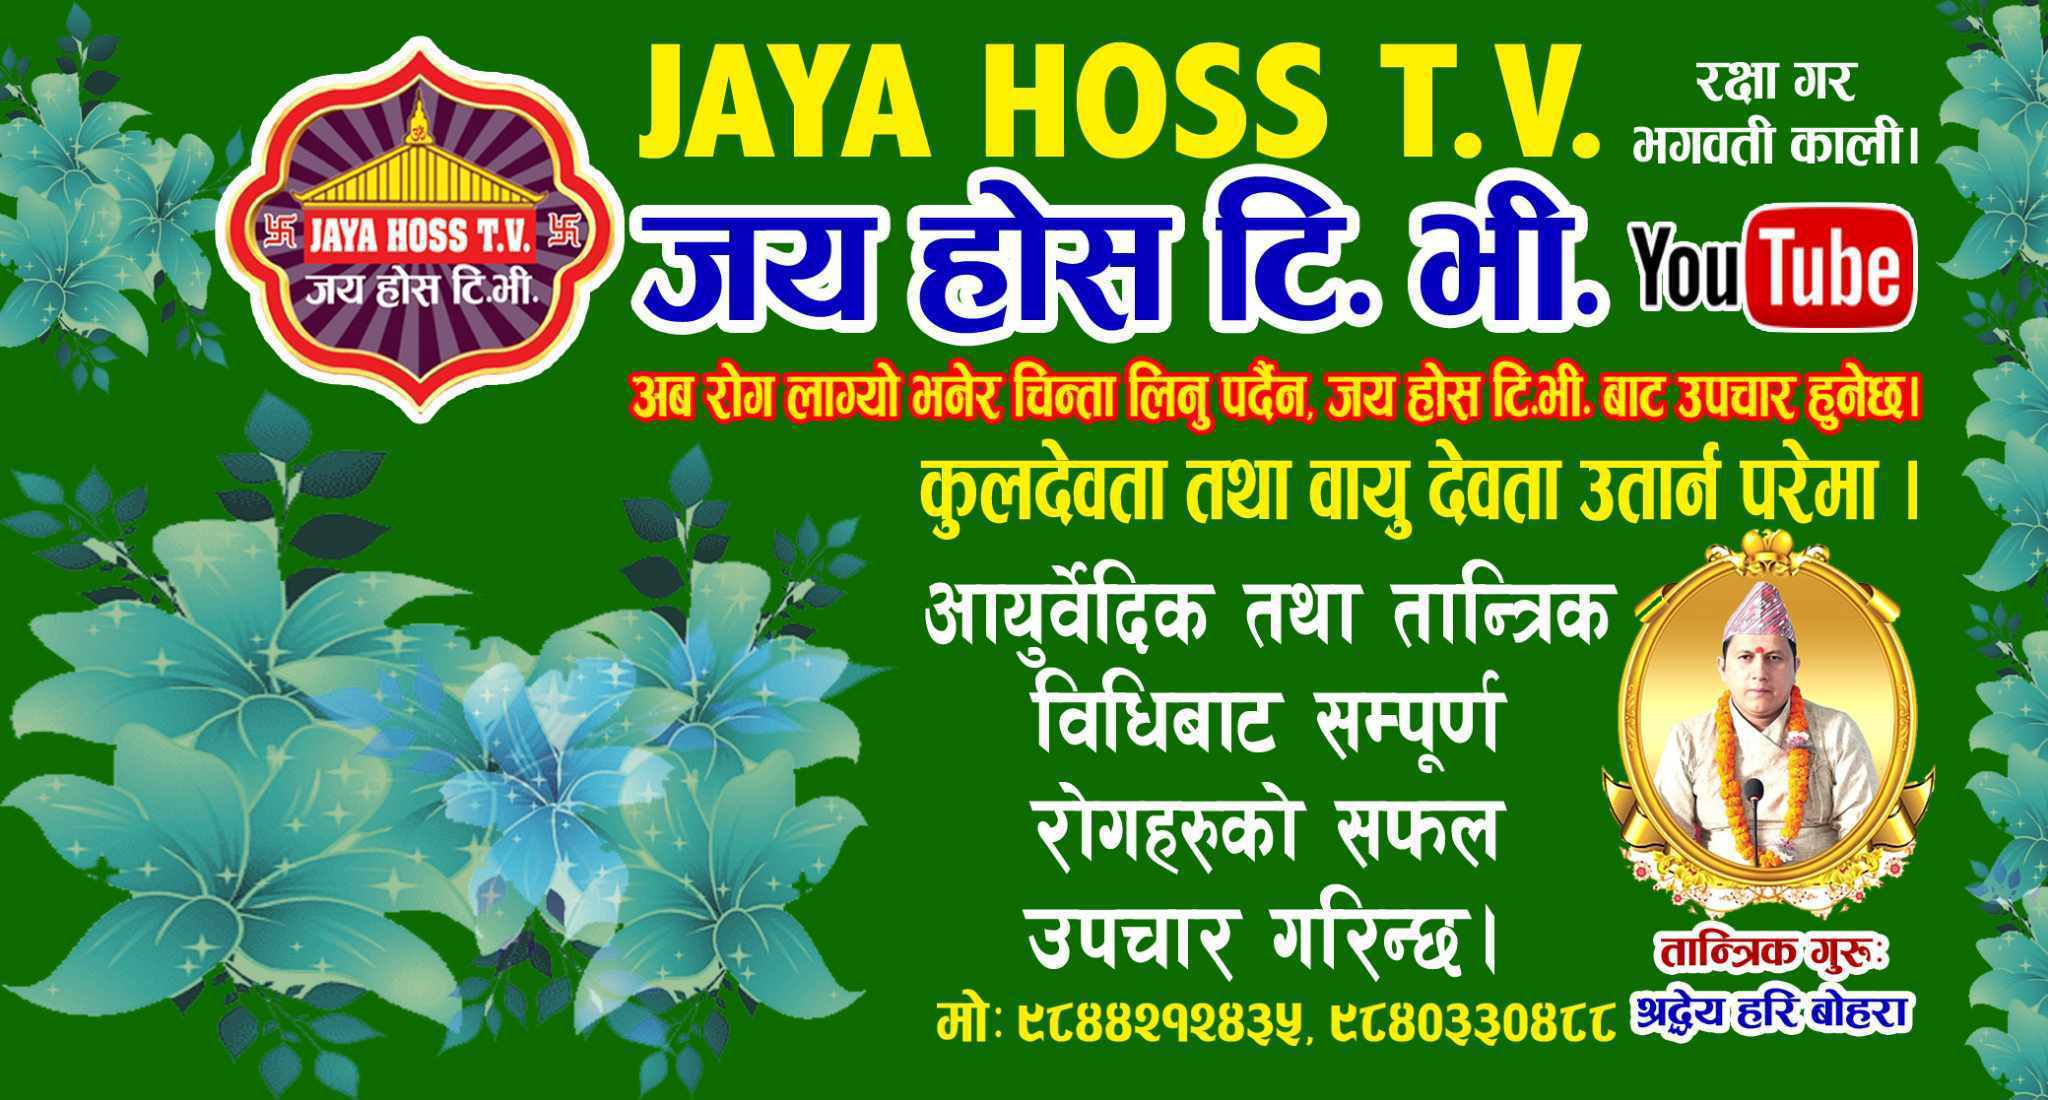 Jaya Hoss TV